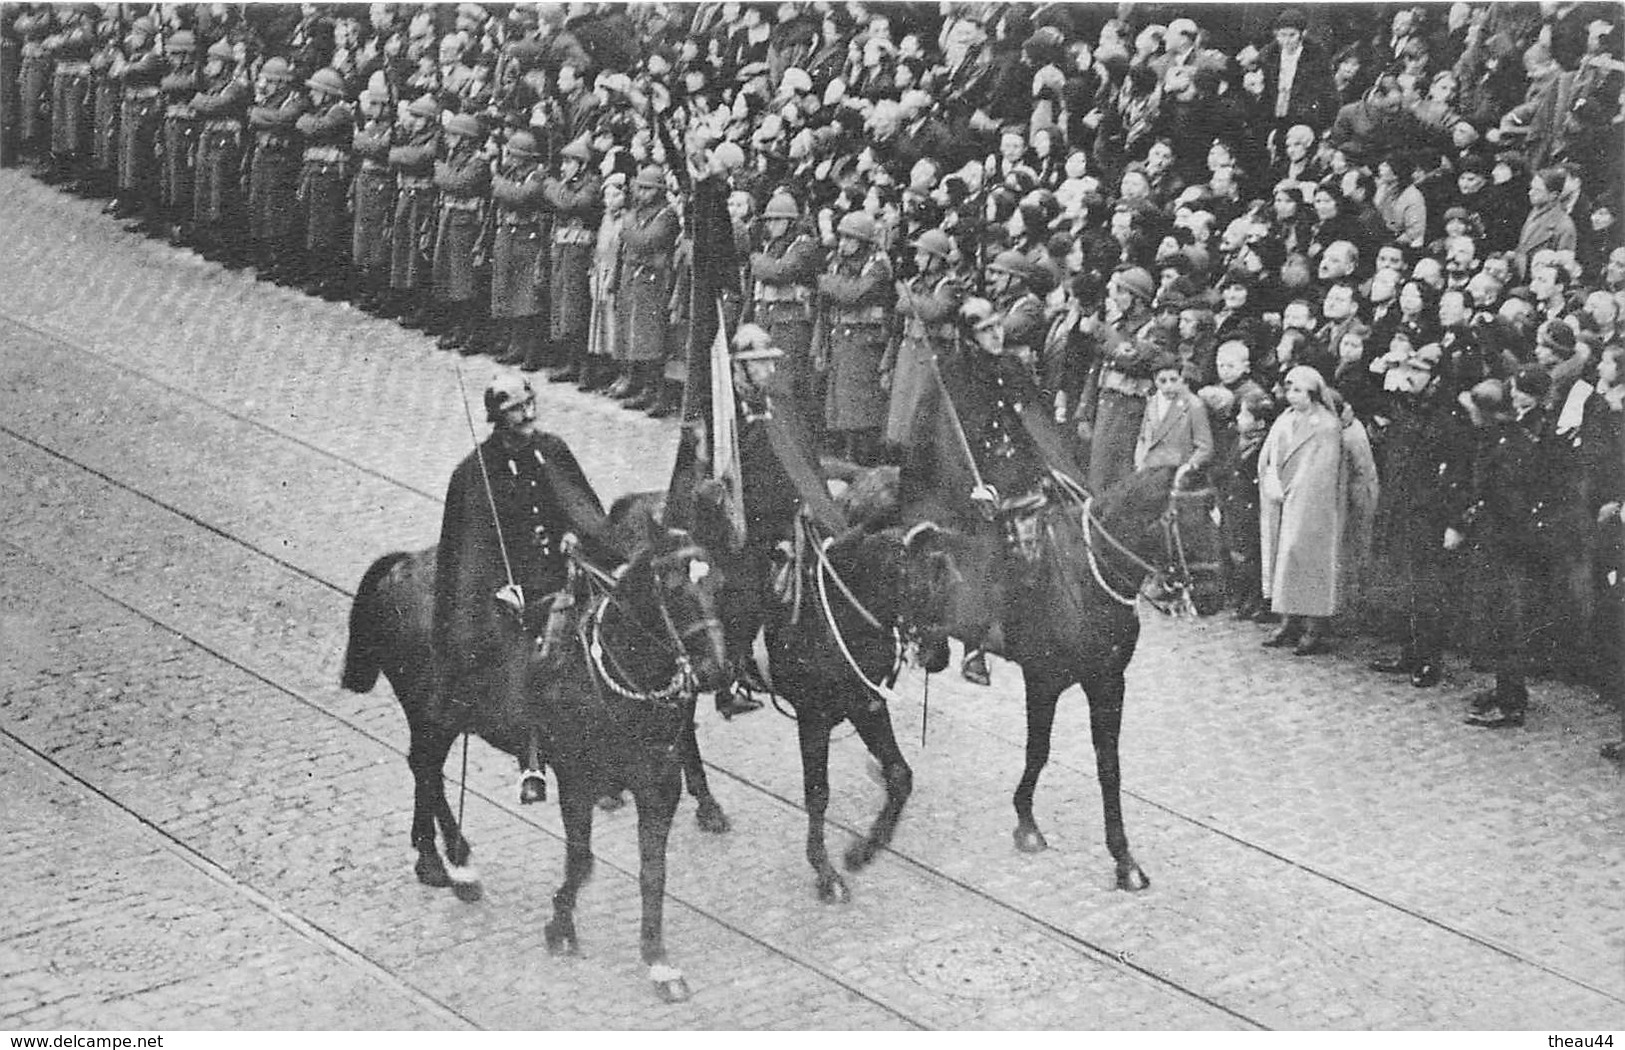 ¤¤   -  BELGIQUE  -  BRUXELLES  -  Lot de 9 Cartes des Funérailles du Roi ALBERT 1er en 1934  -  ¤¤